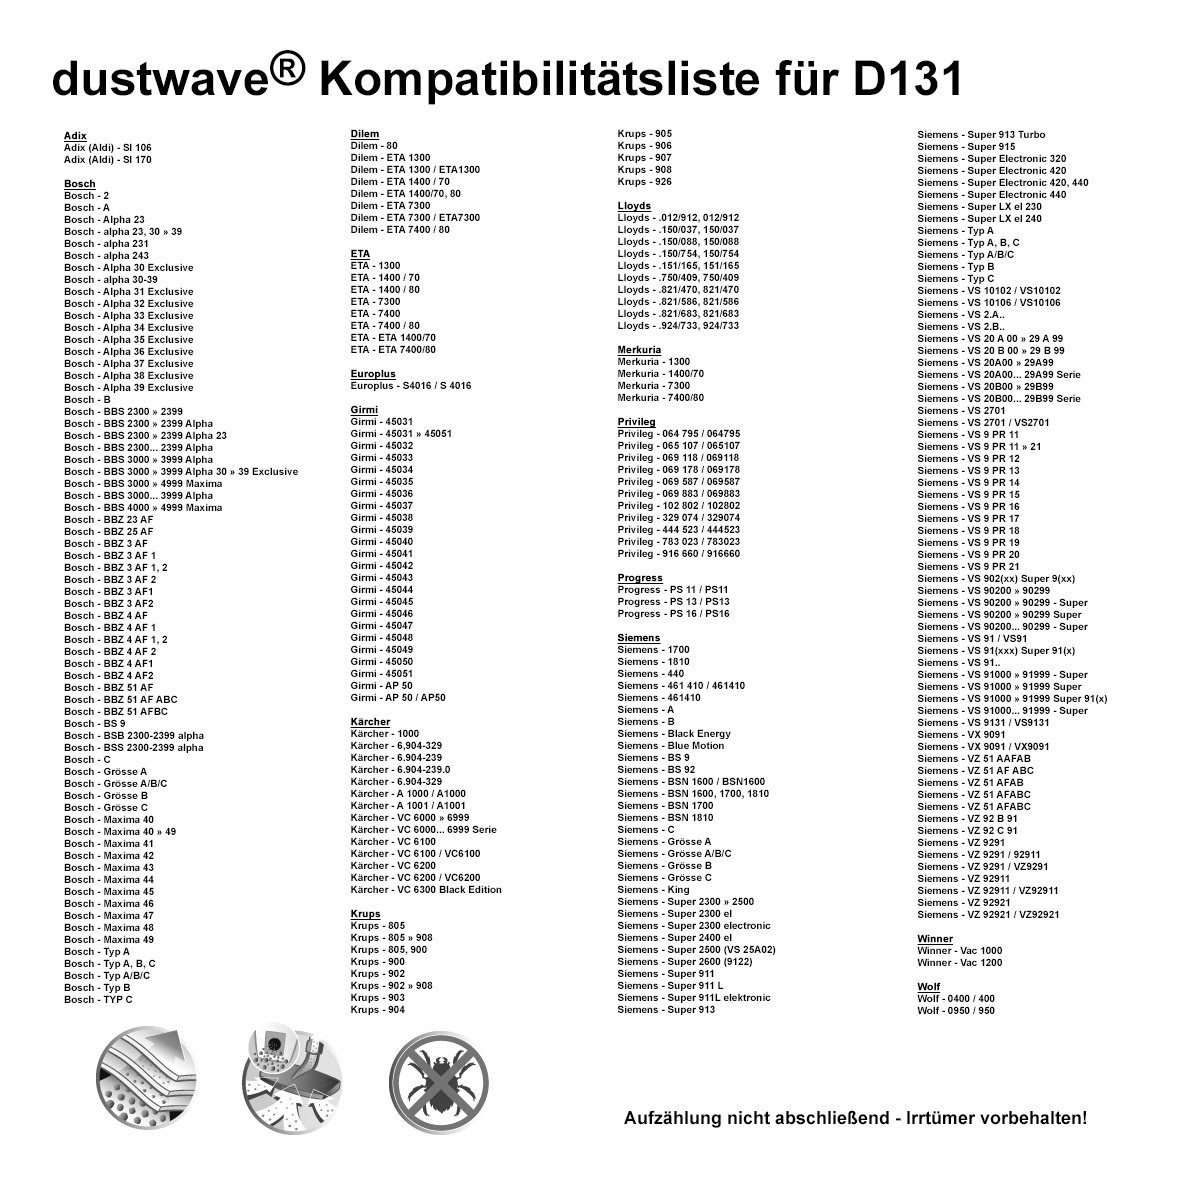 Dustwave Baur / Test-Set, Test-Set, Staubsaugerbeutel - 340.965 St., 15x15cm (ca. Hepa-Filter 340-965, Staubsaugerbeutel 1 + passend zuschneidbar) 1 1 für